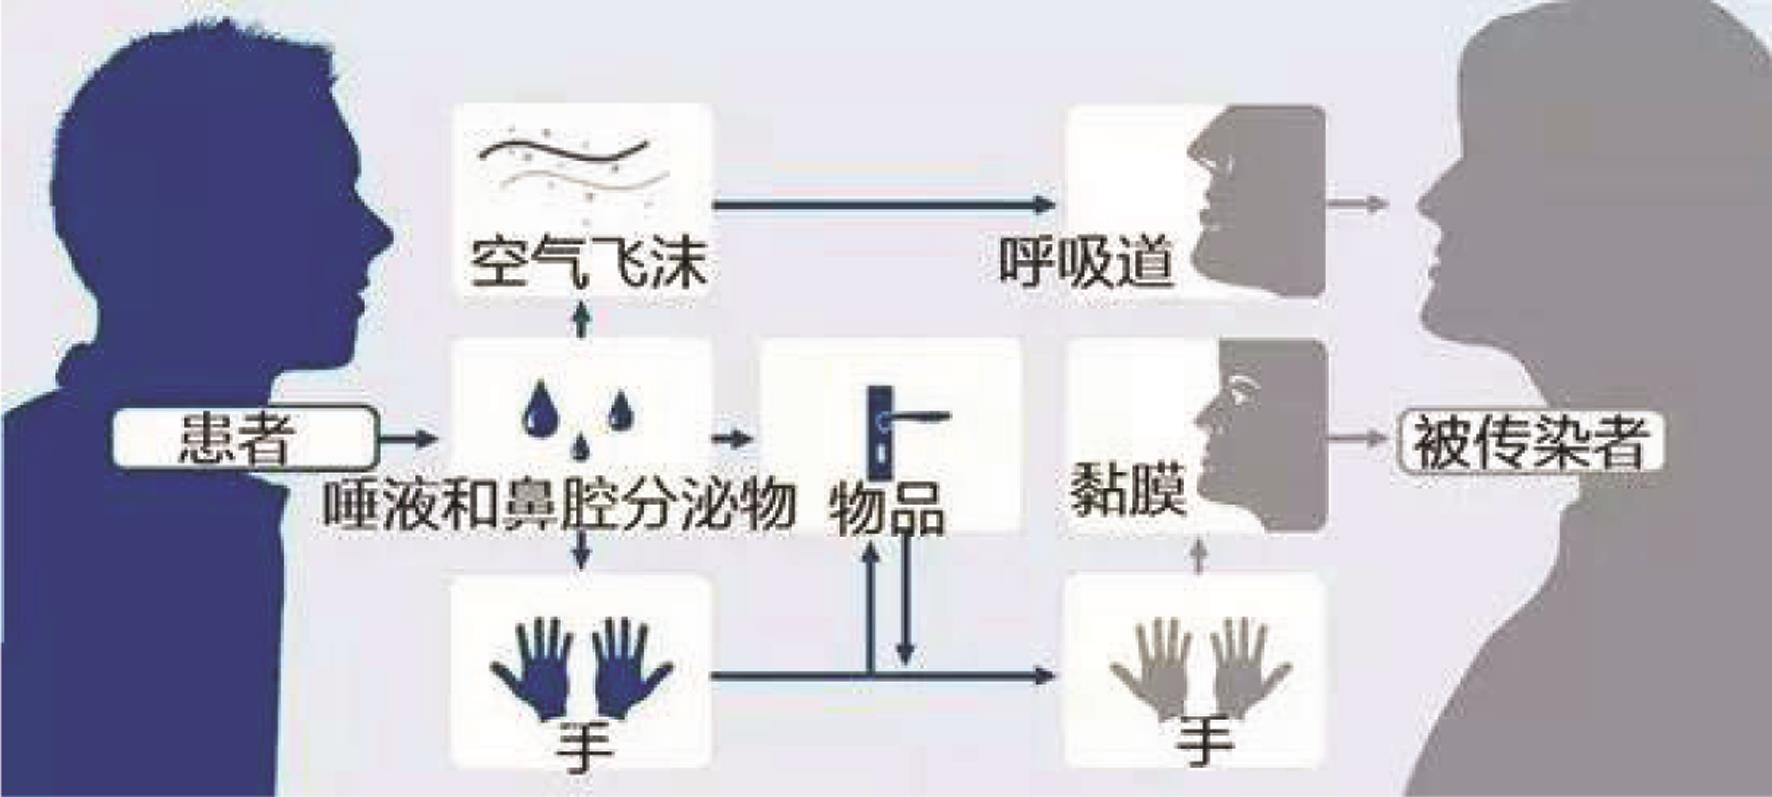 冠状病毒人传染人的主要途径：呼吸道、黏膜、手接触。